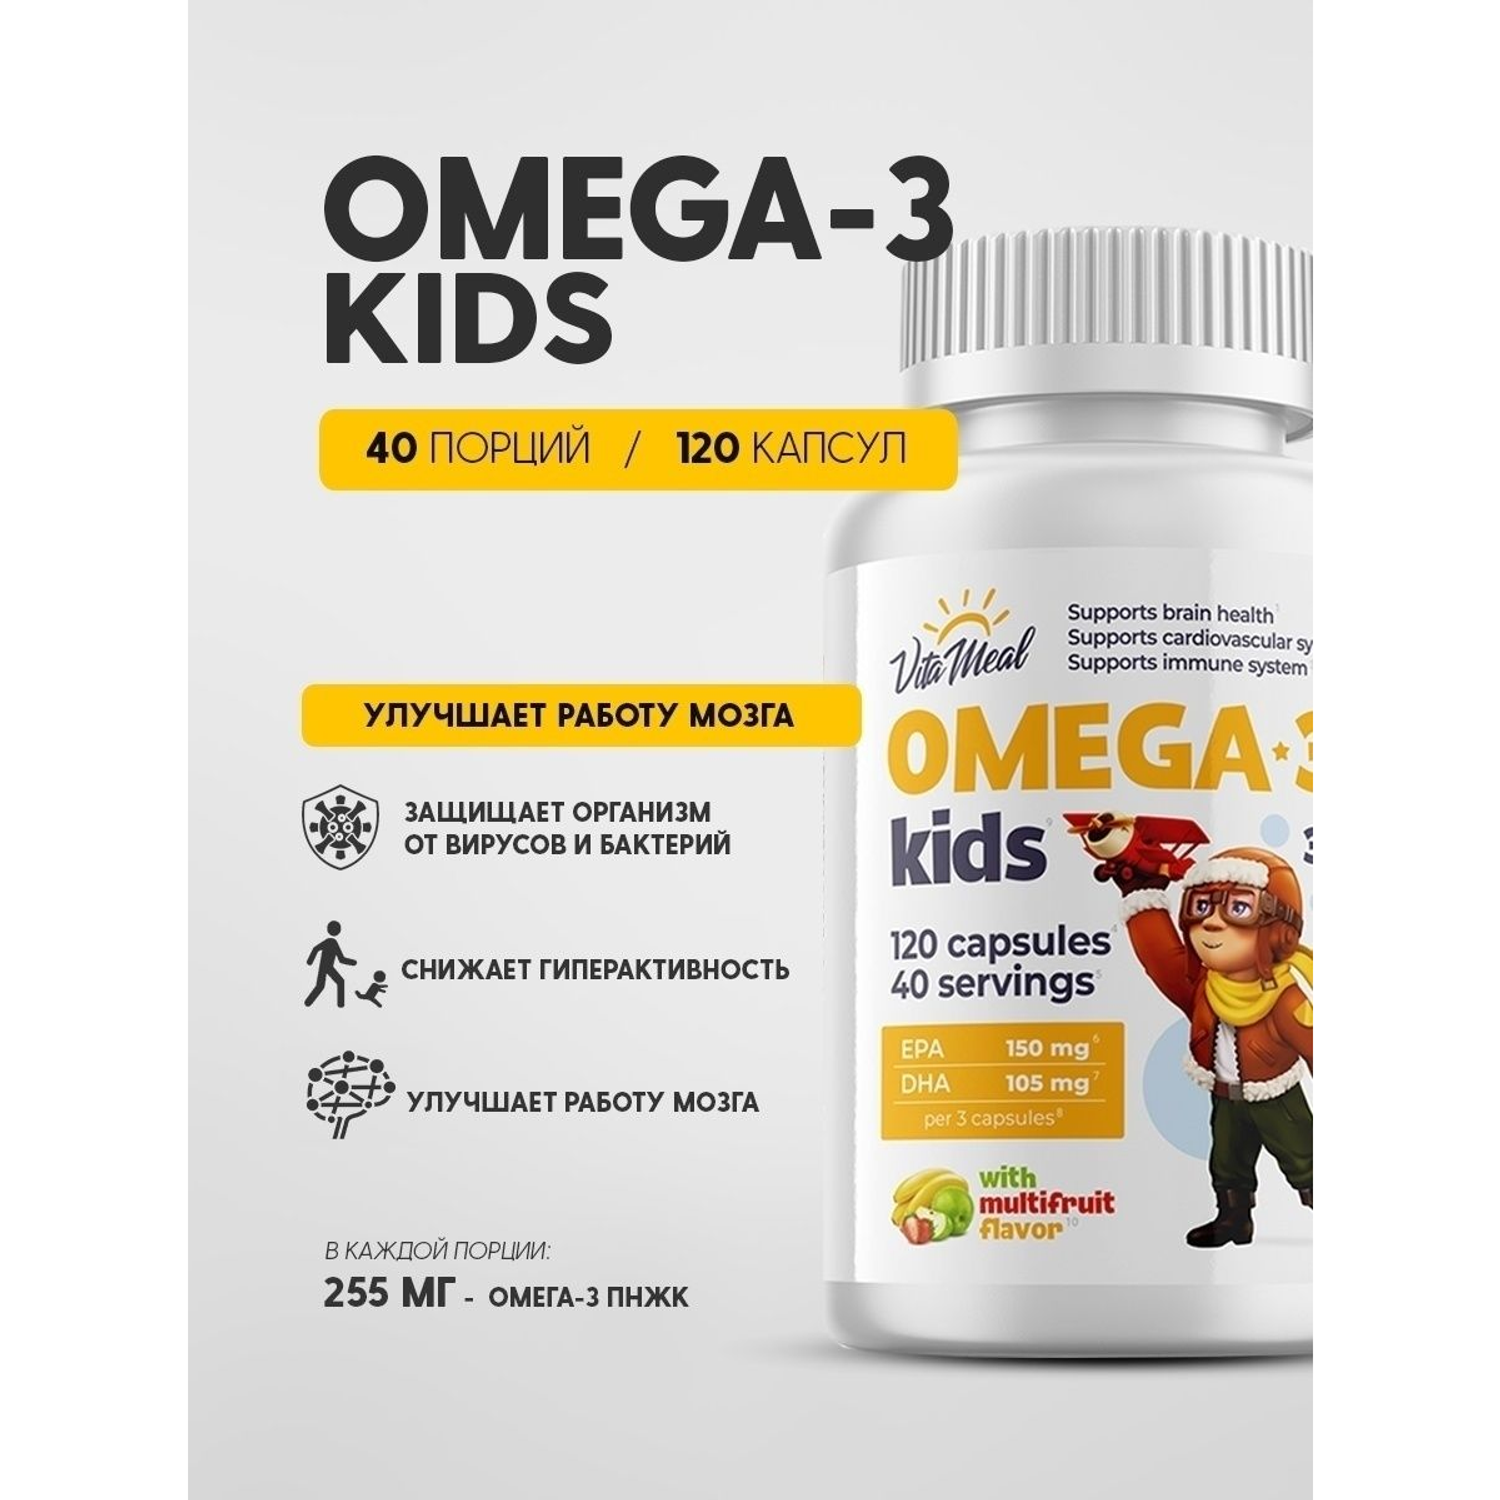 Биологически активная добавка VitaMeal Омега-3 Kids для детей с 3 лет мальтифрукт 120 капсул - фото 2